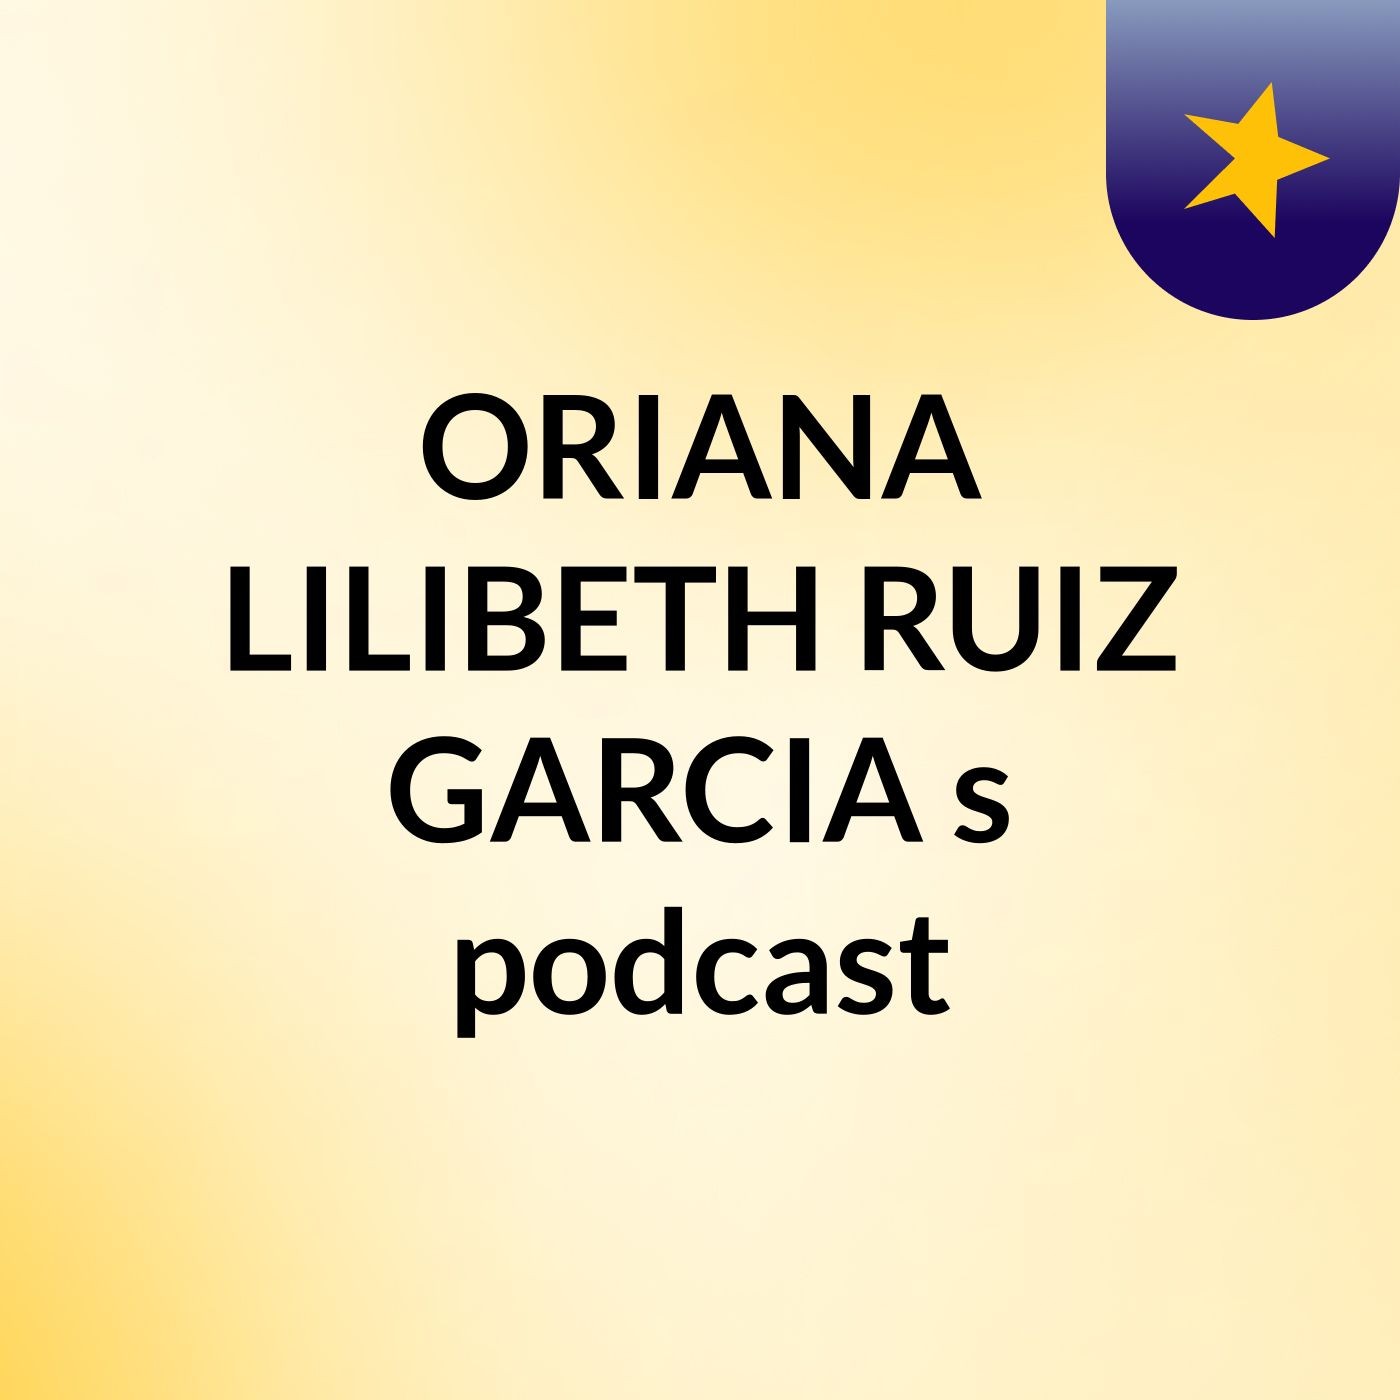 ORIANA LILIBETH RUIZ GARCIA's podcast